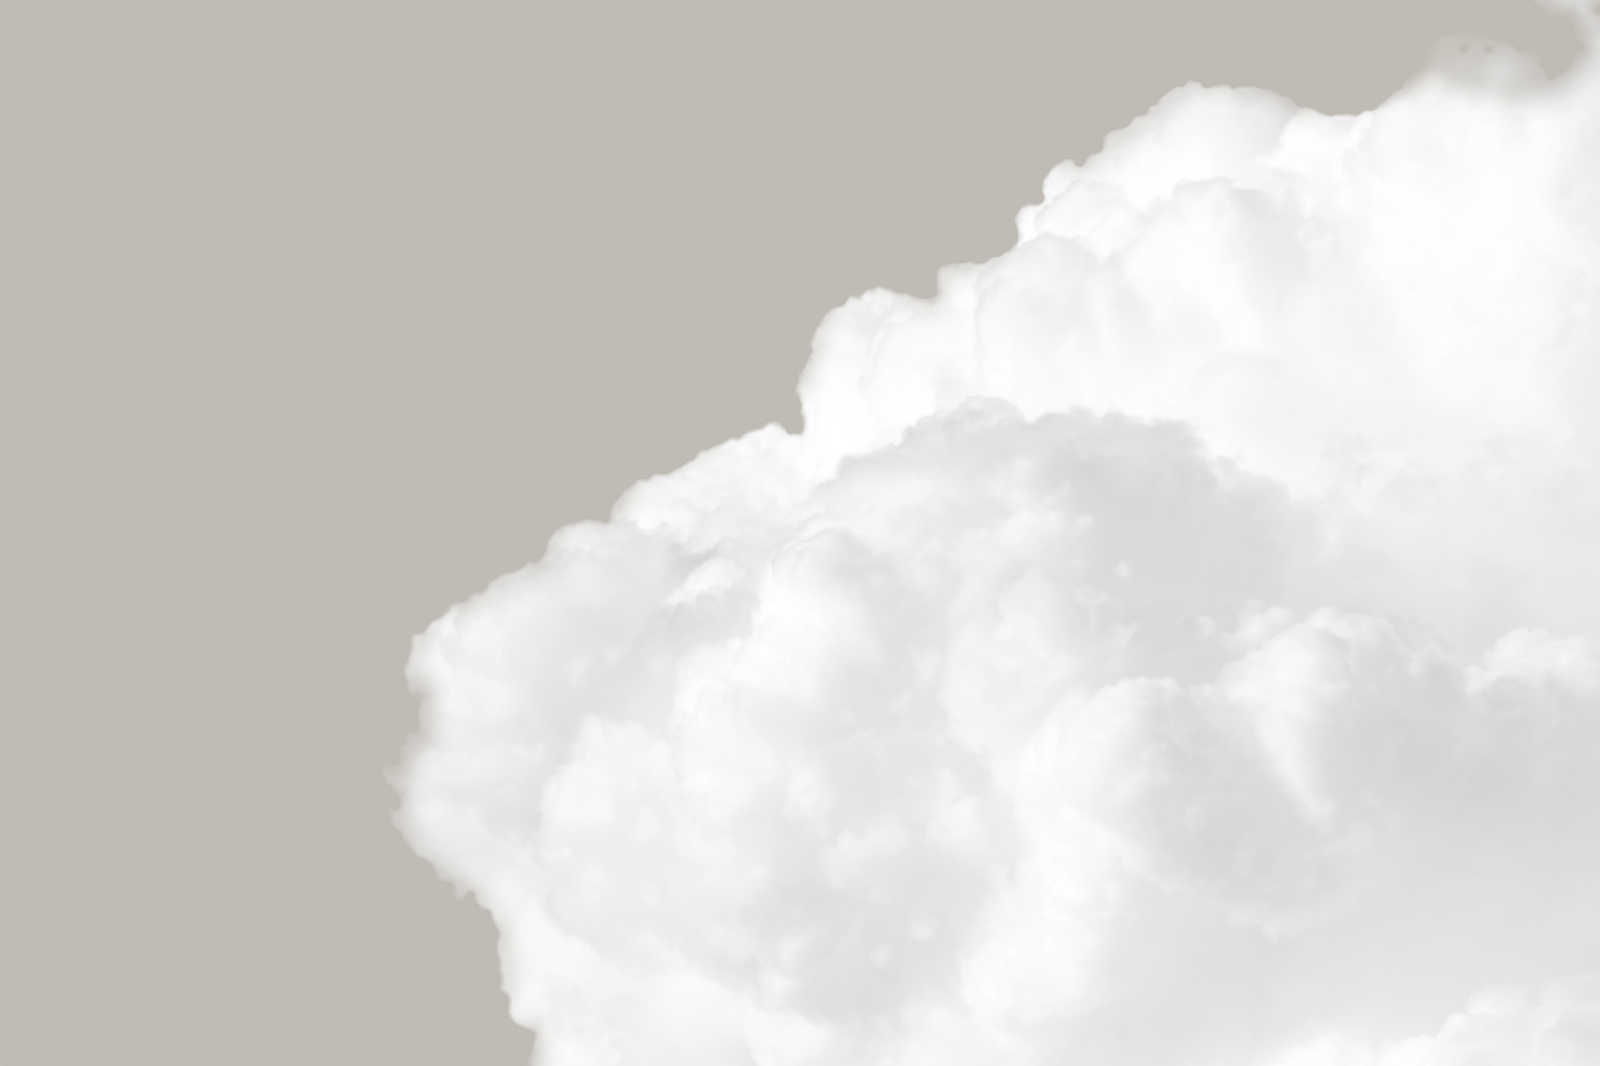             Cuadro en lienzo con nubes blancas en cielo gris - 0,90 m x 0,60 m
        